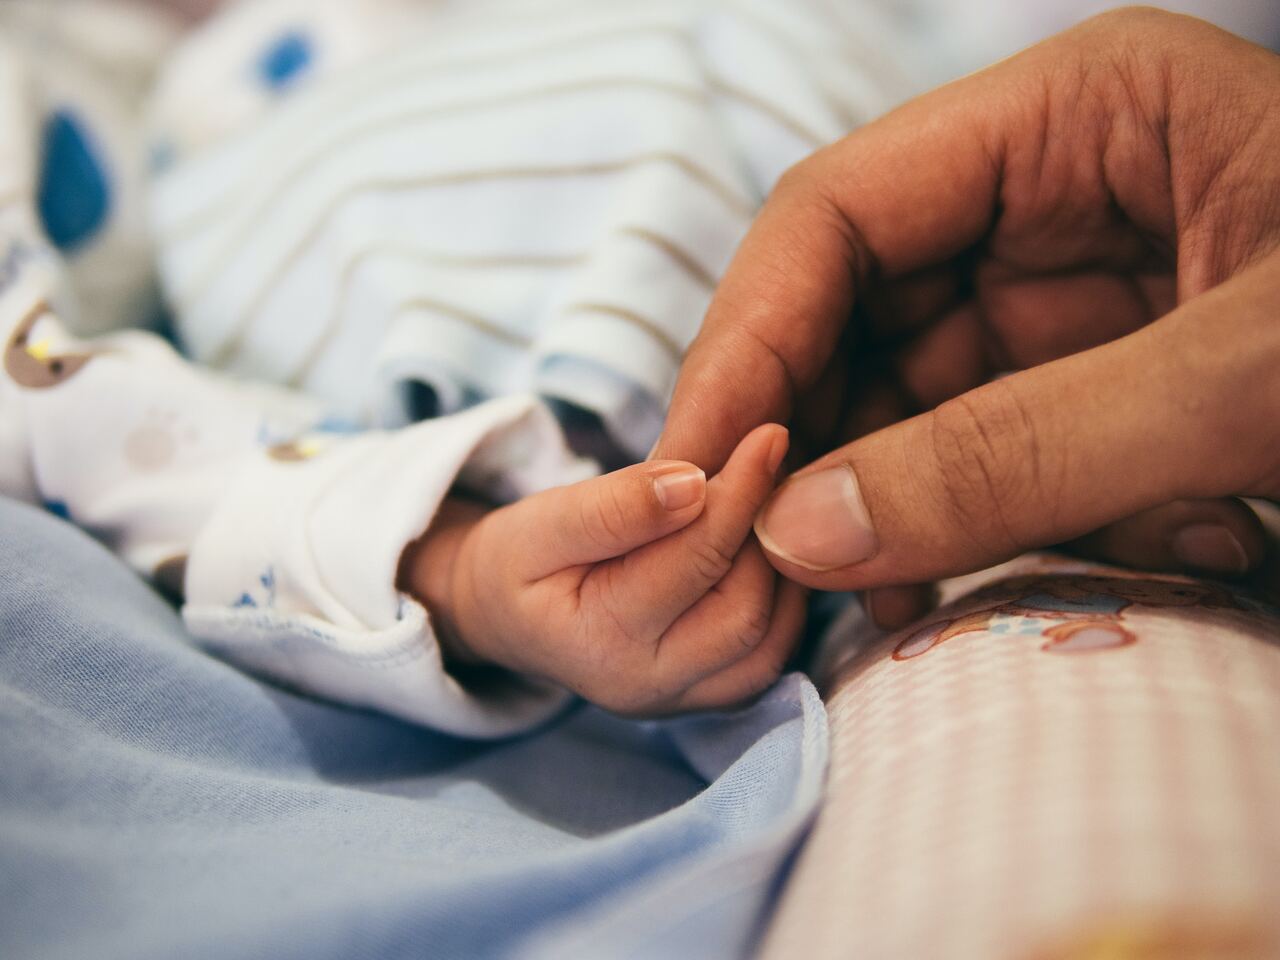 Unghie di bambini e neonati: come tagliarle? - BabyGreen